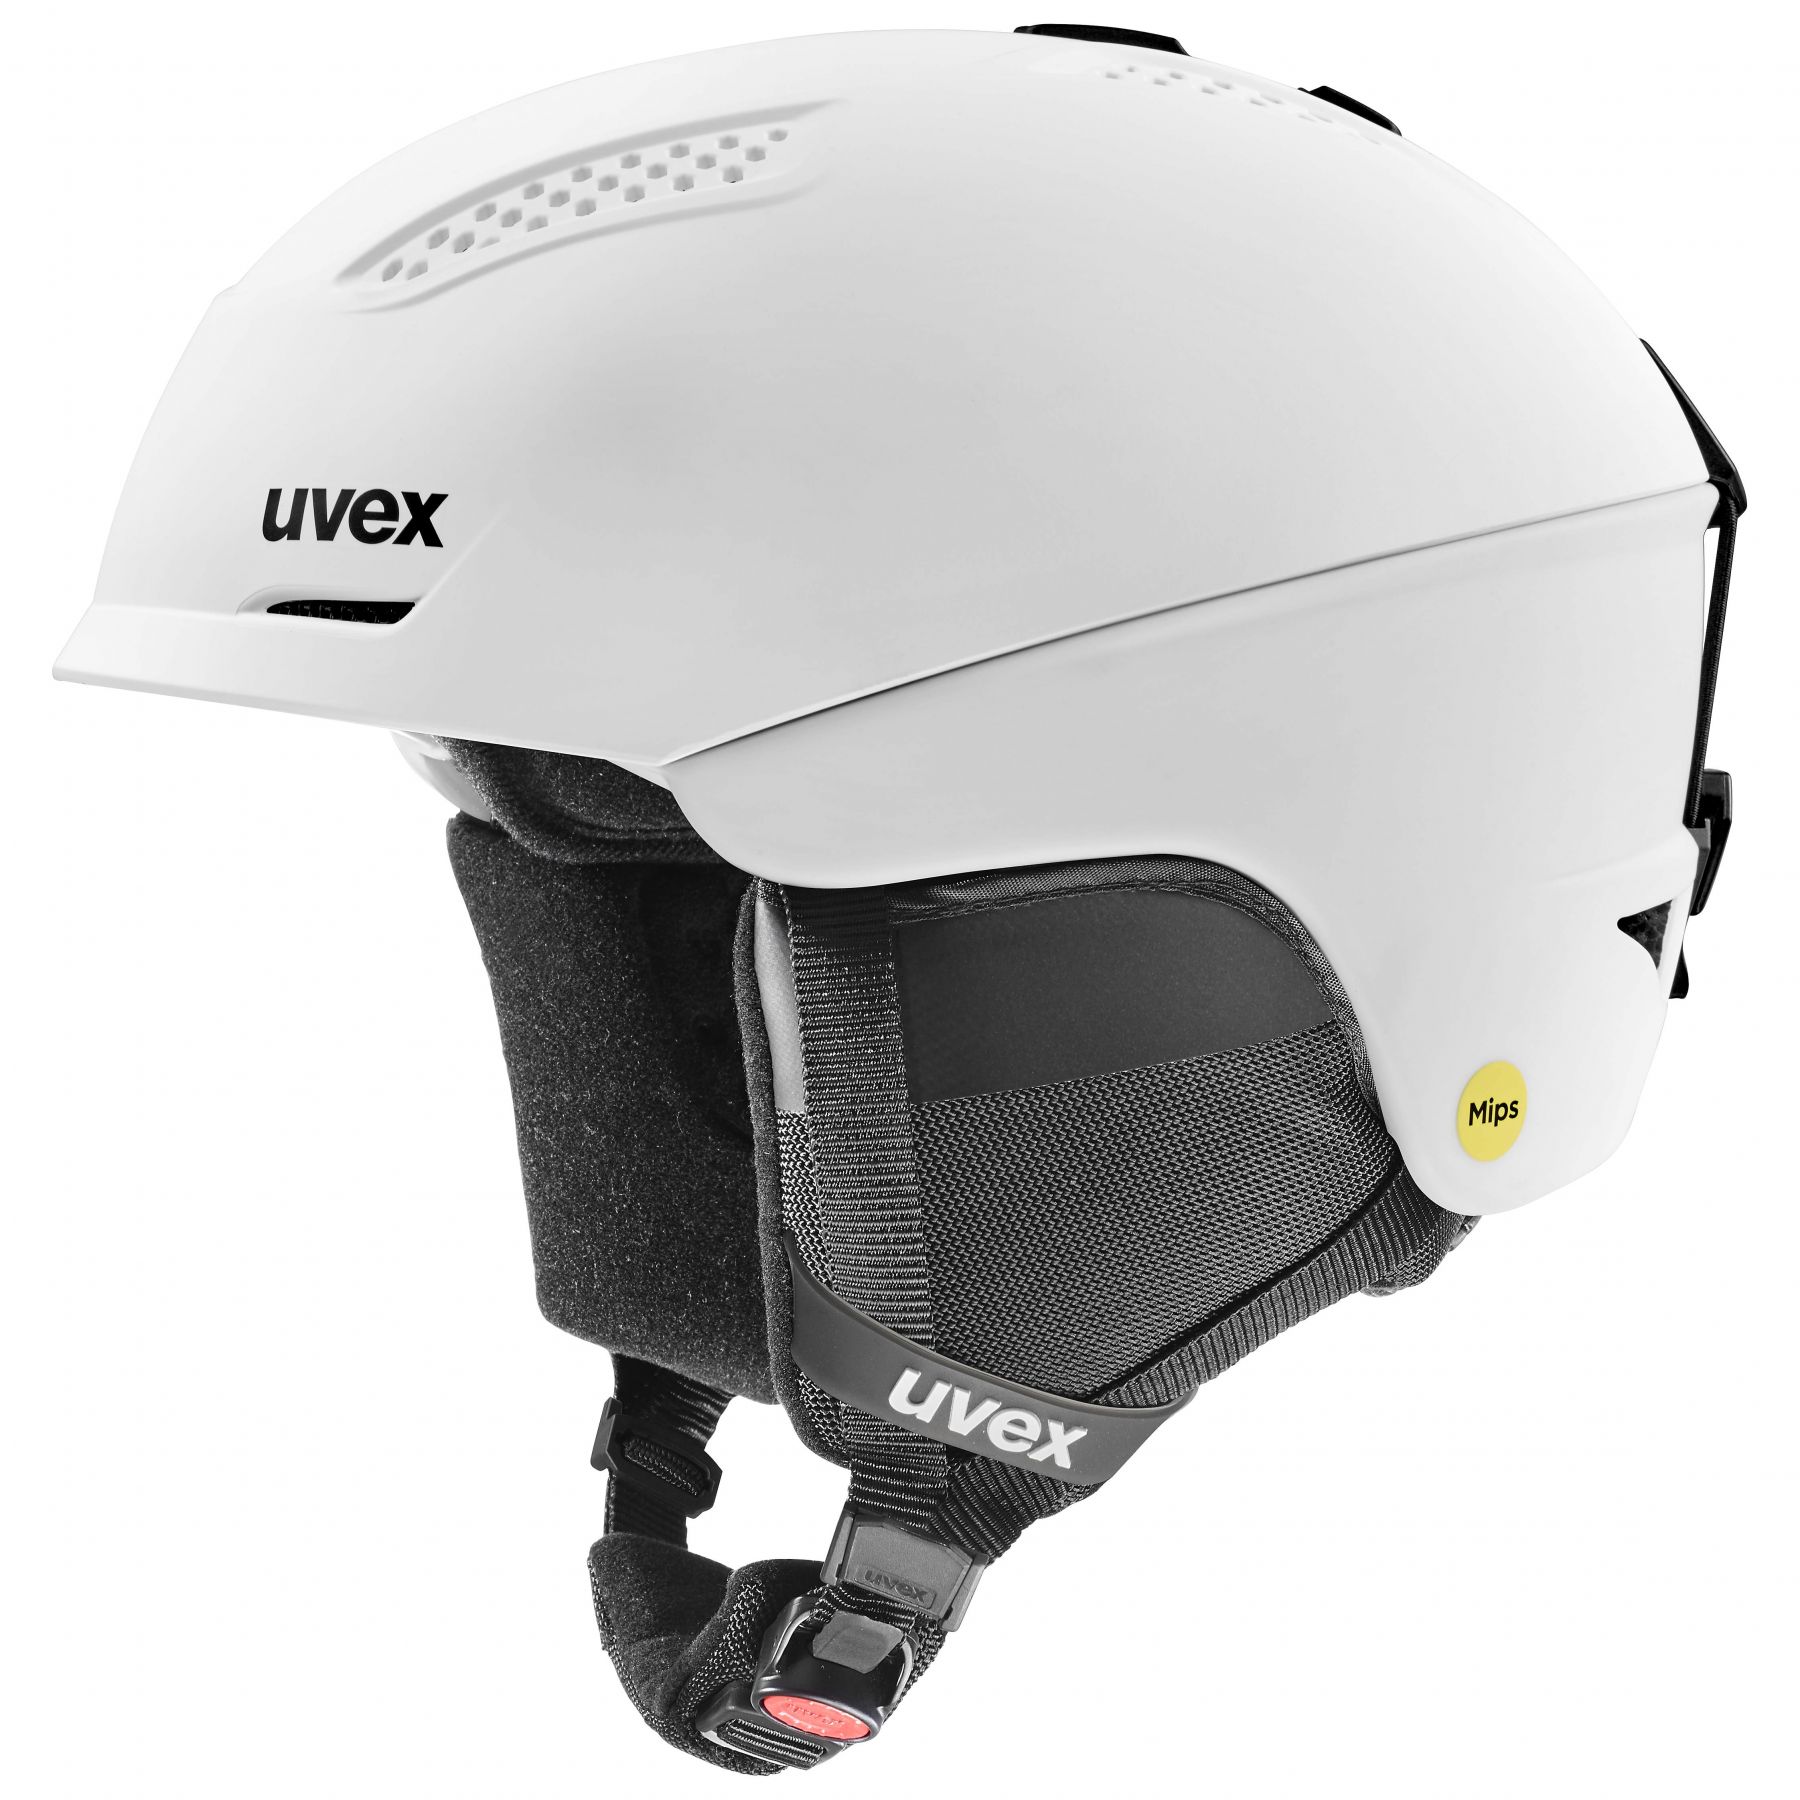 Brug Uvex Ultra MIPS, skihjelm, hvid til en forbedret oplevelse